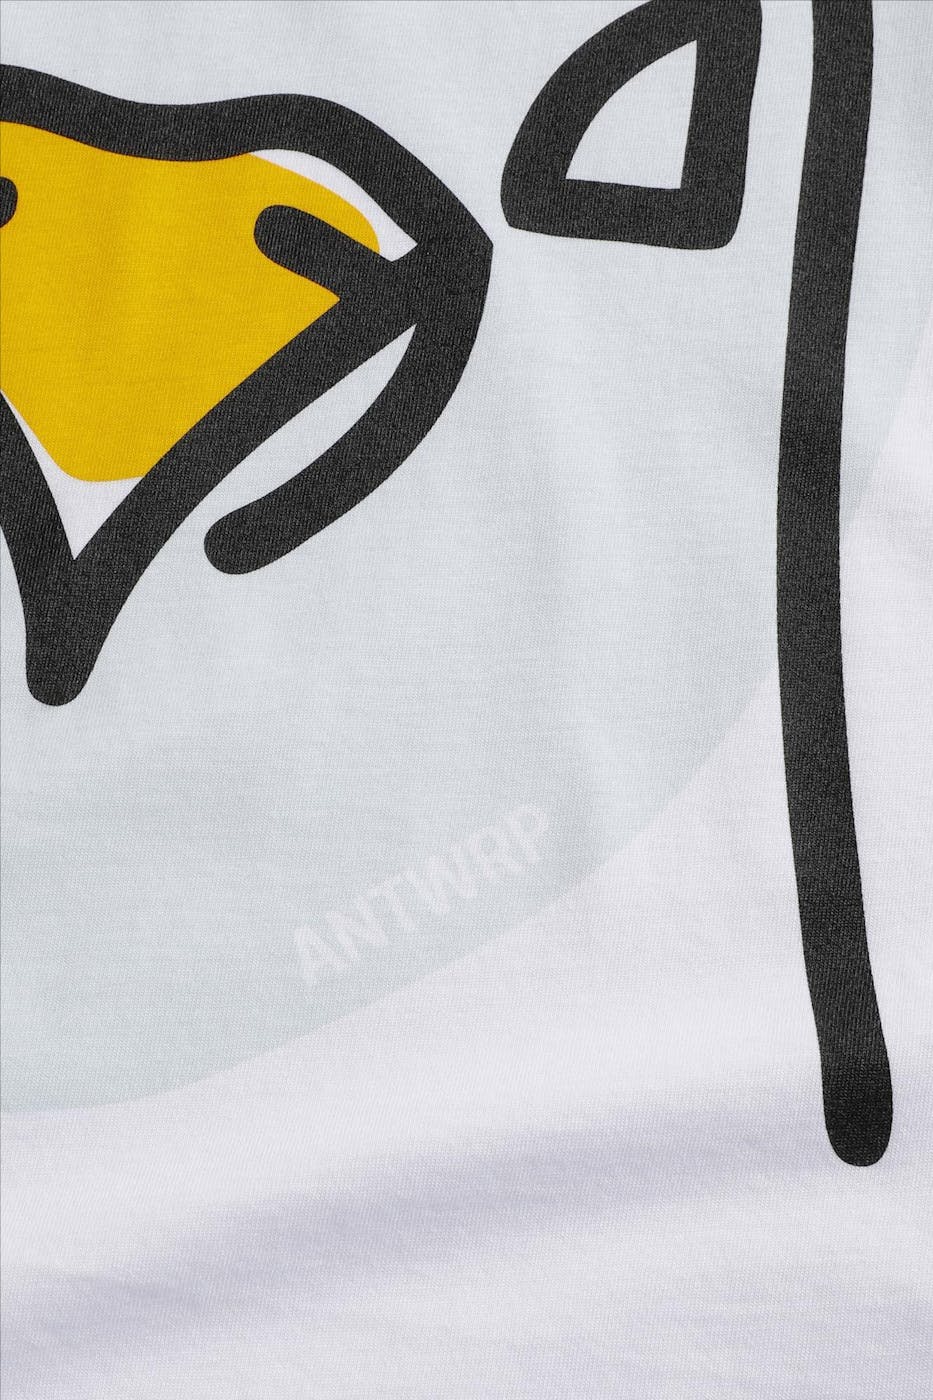 Antwrp - Witte Pigeon Backprint T-shirt